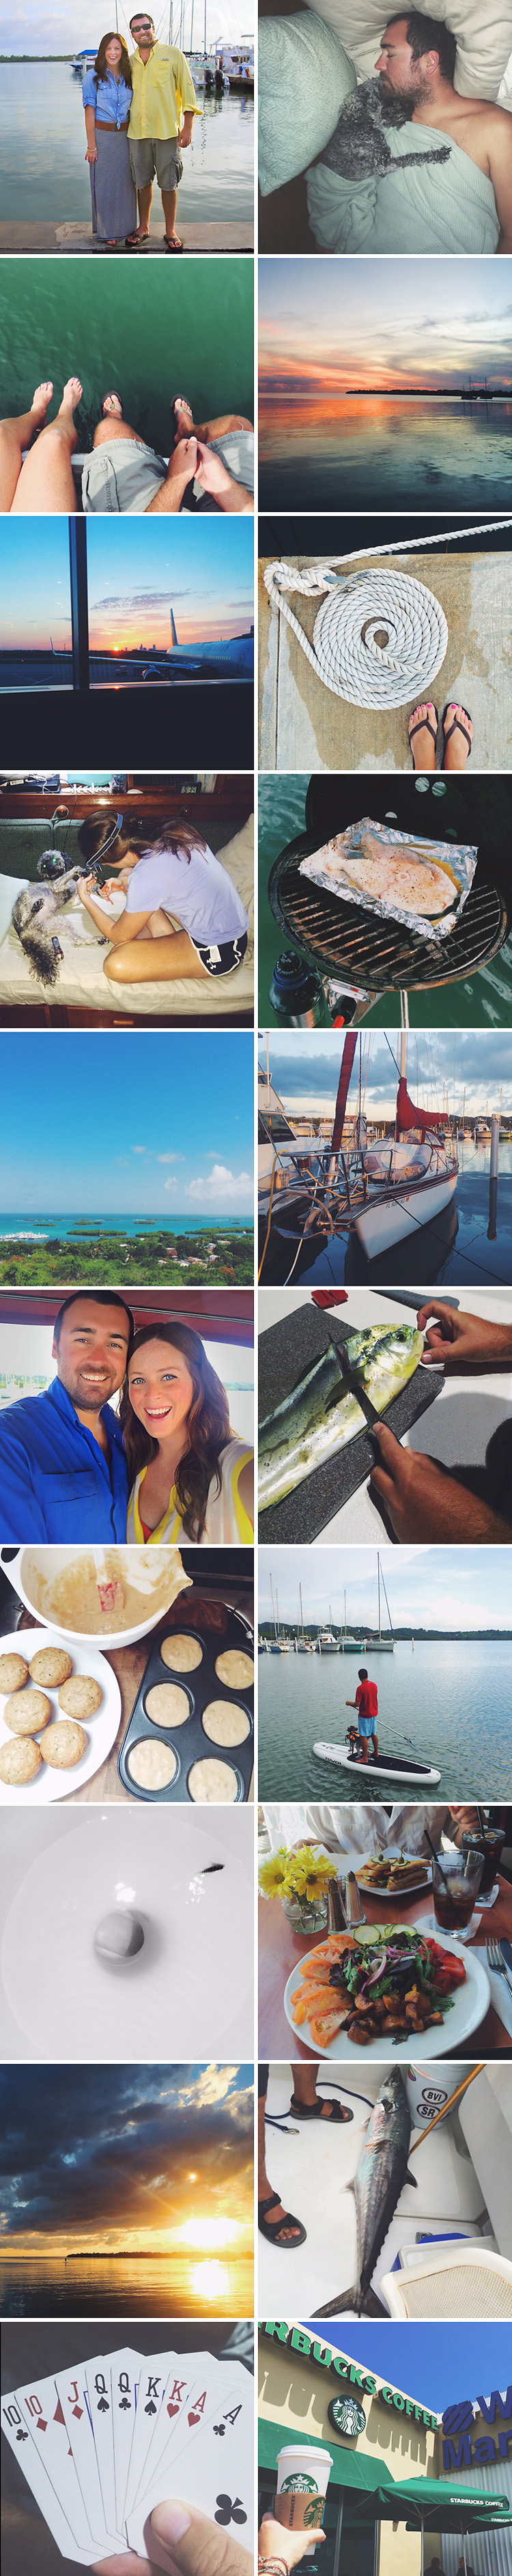 Sailing-Blog-Cruising-Caribbean-Boat-Life-Lately-September-2014-Puerto-Rico-LAHOWIND